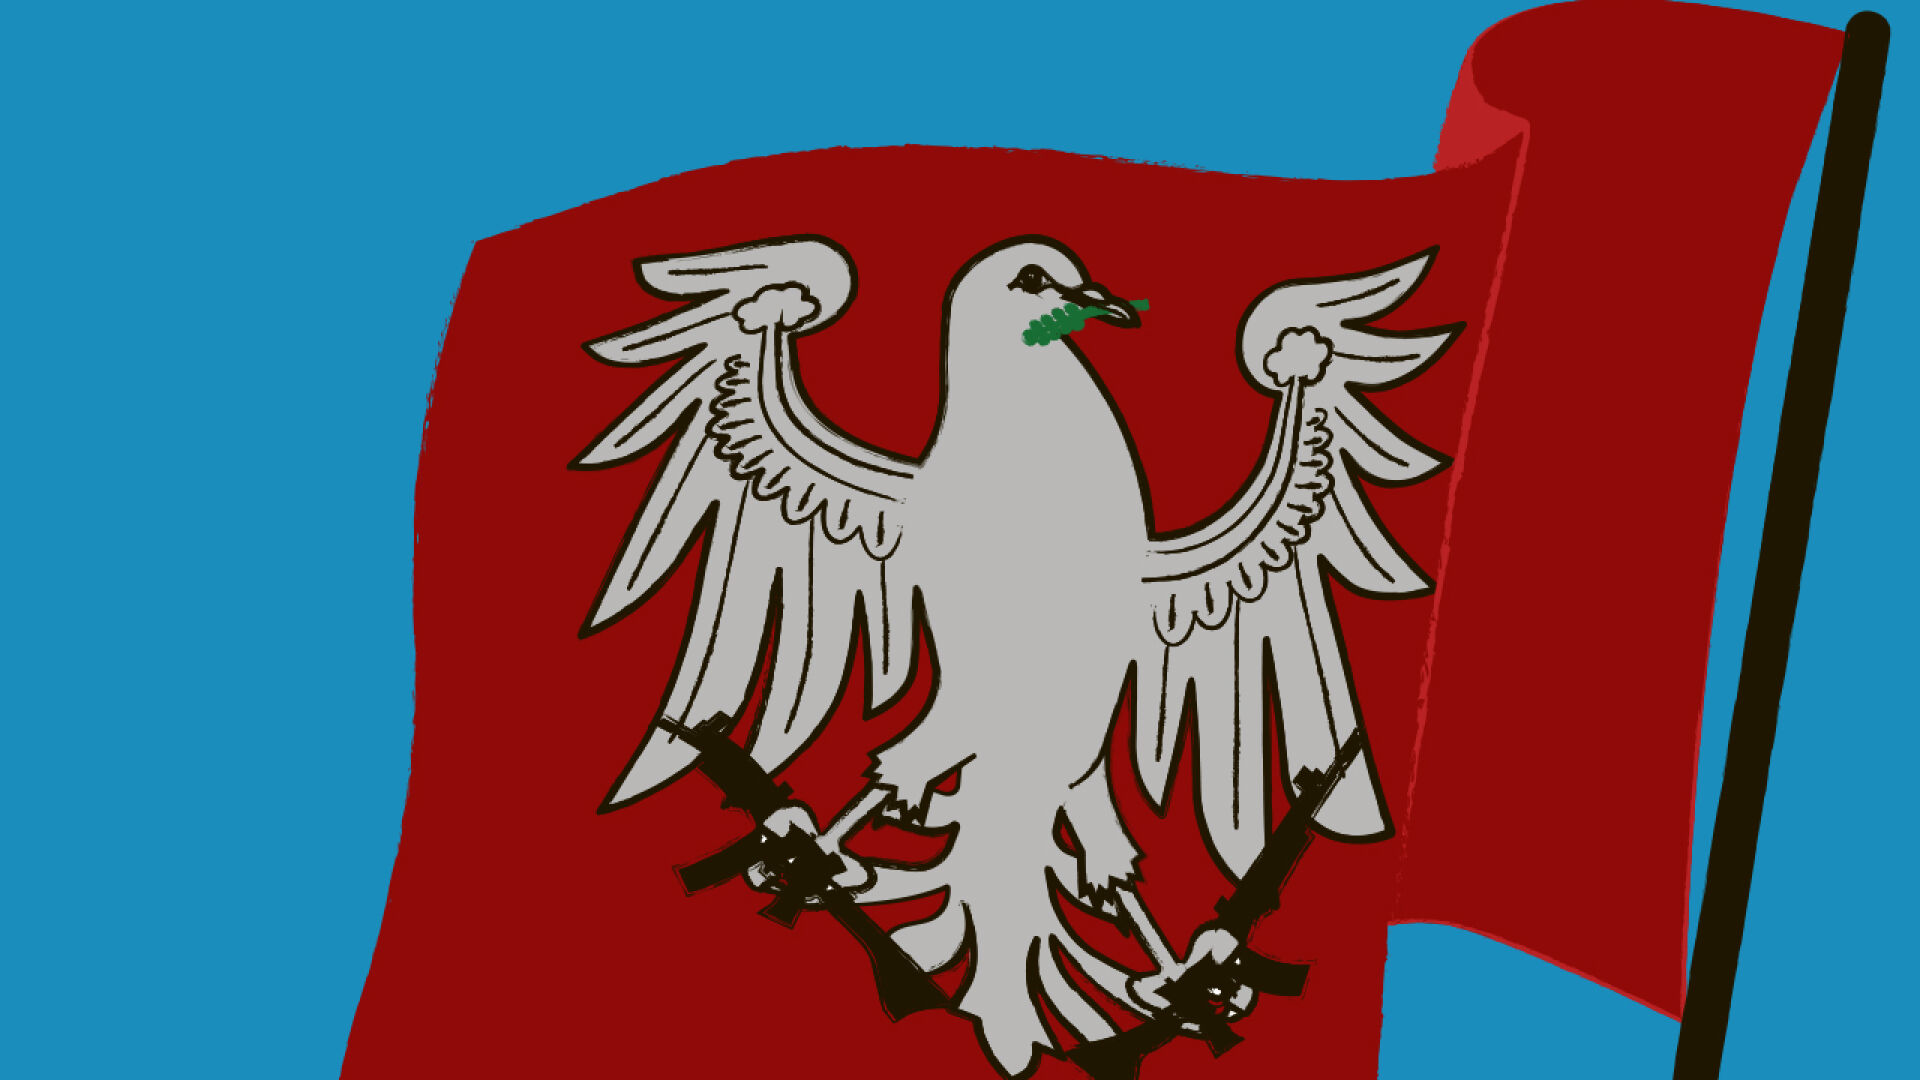 Montenegro Flagge - Geschichte, Bedeutung und Symbolik